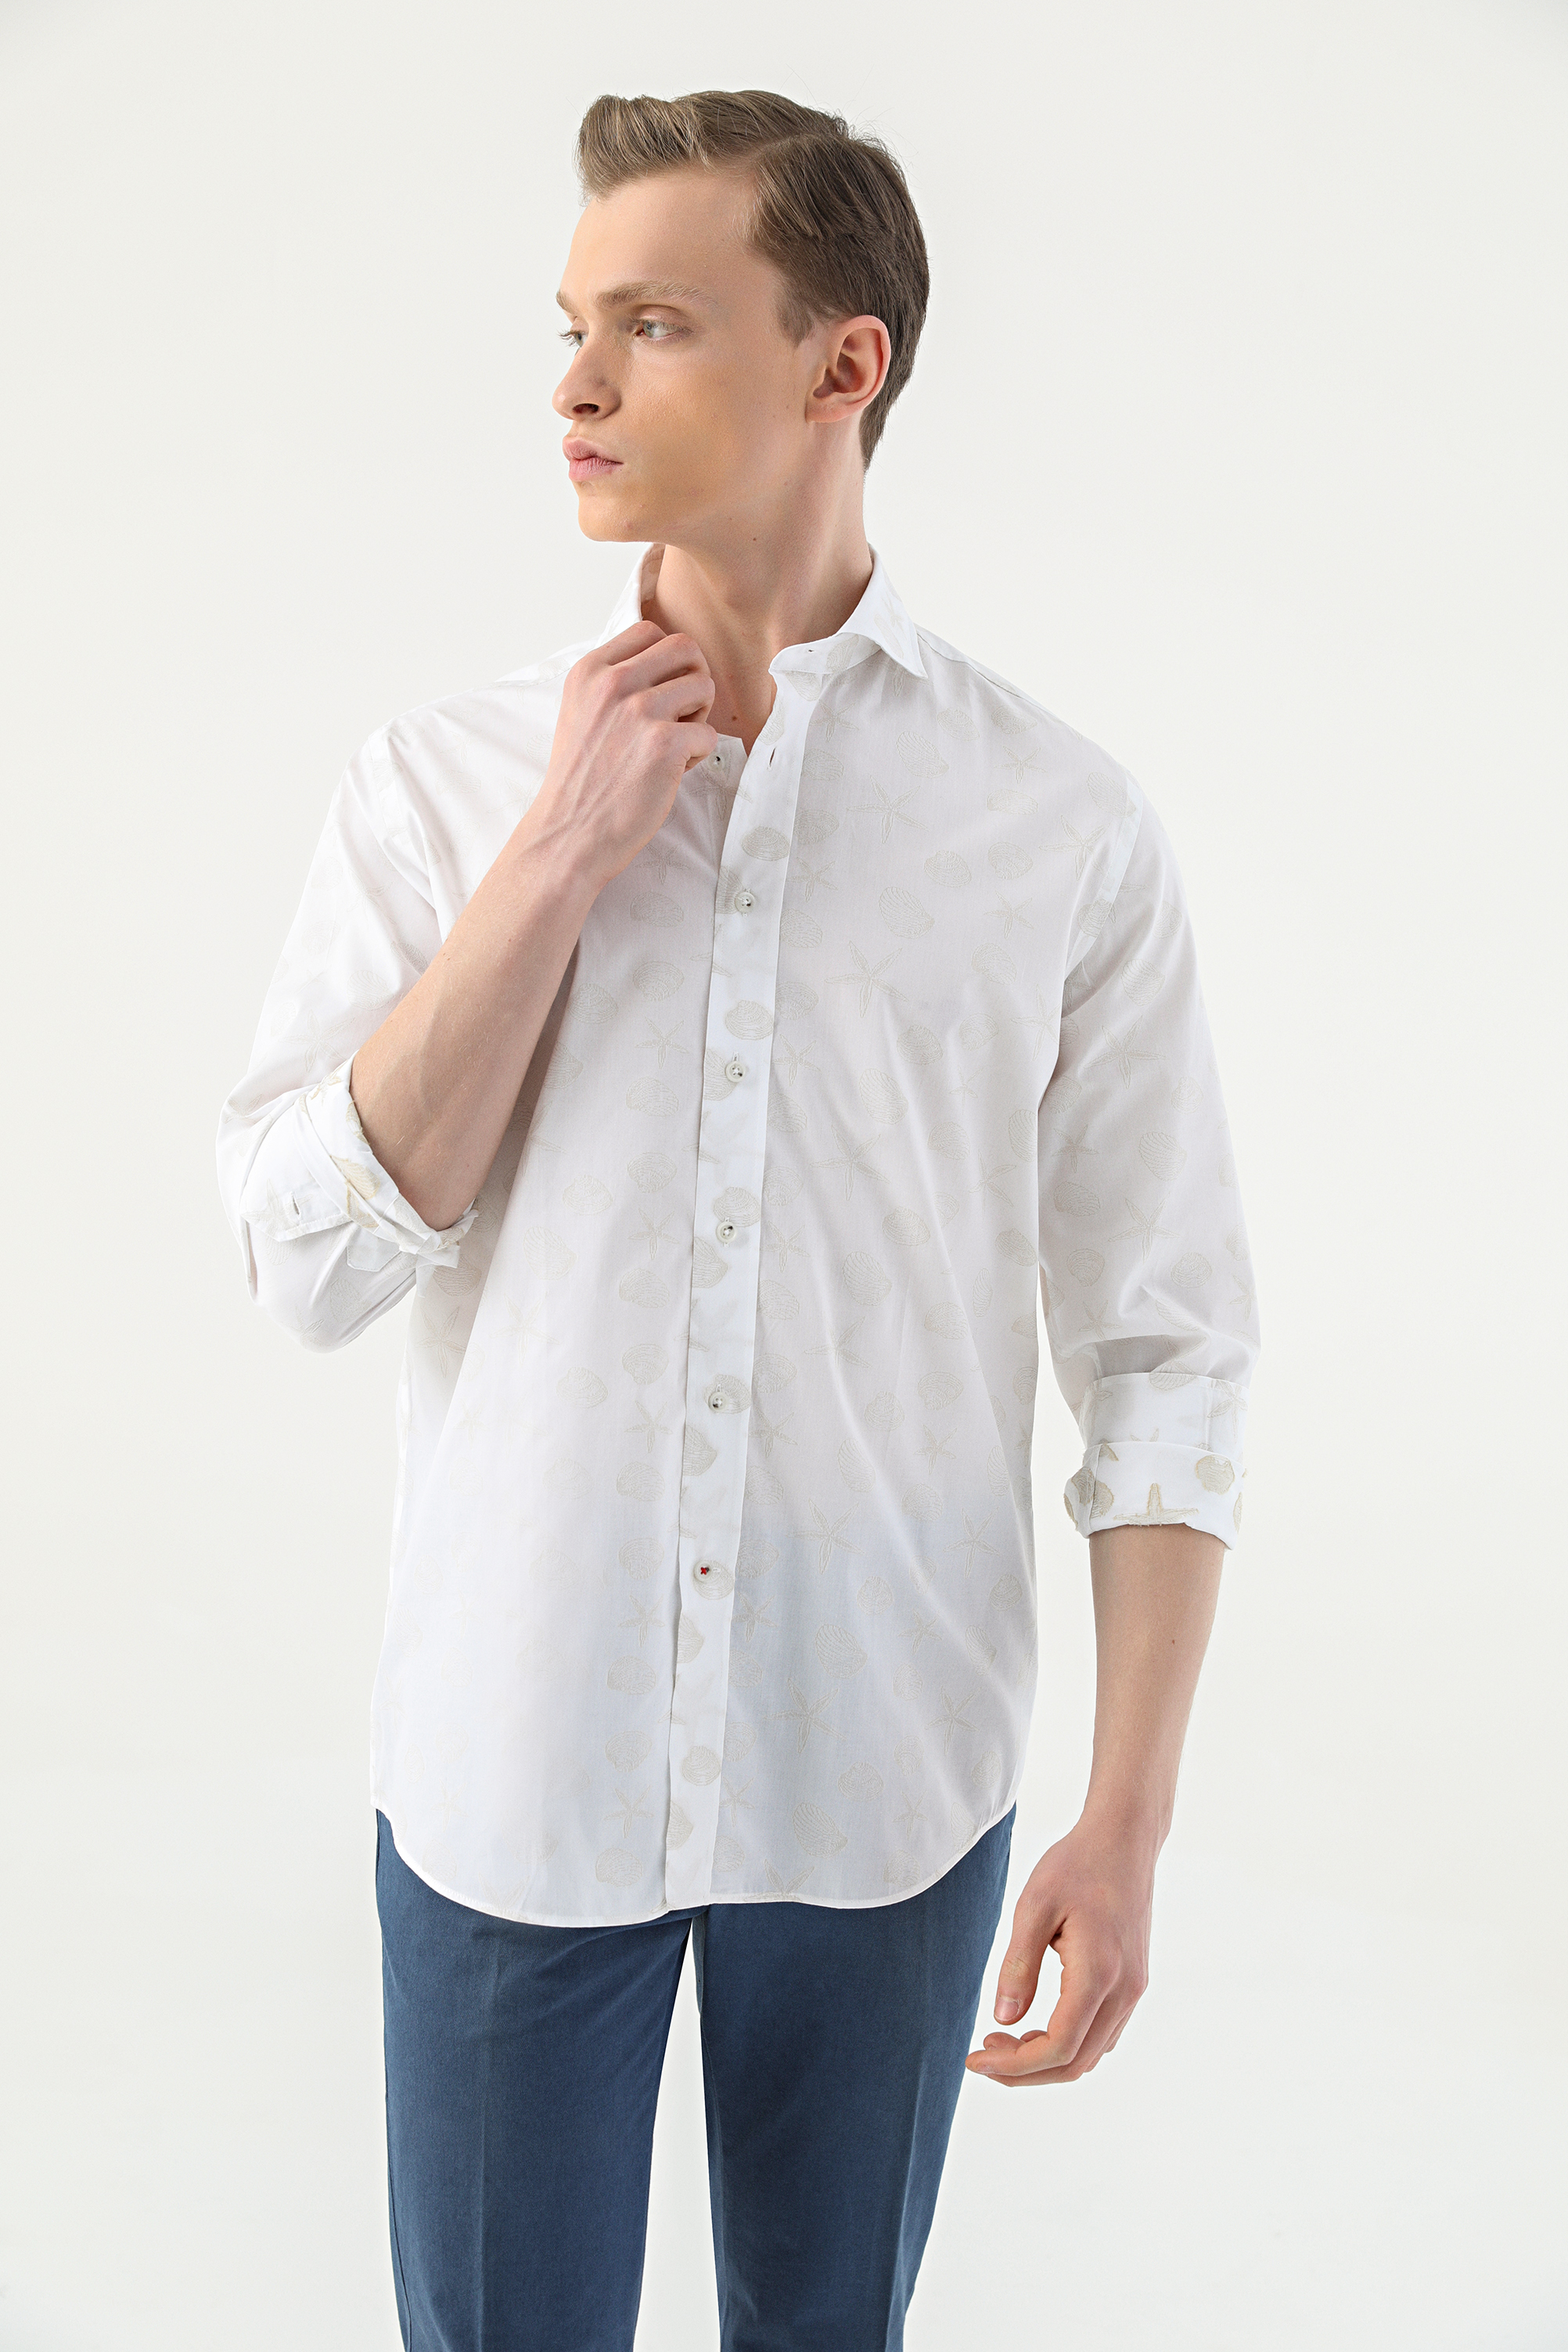 Damat Tween Damat Slim Fit Beyaz Desenli %100 Pamuk Gömlek. 1